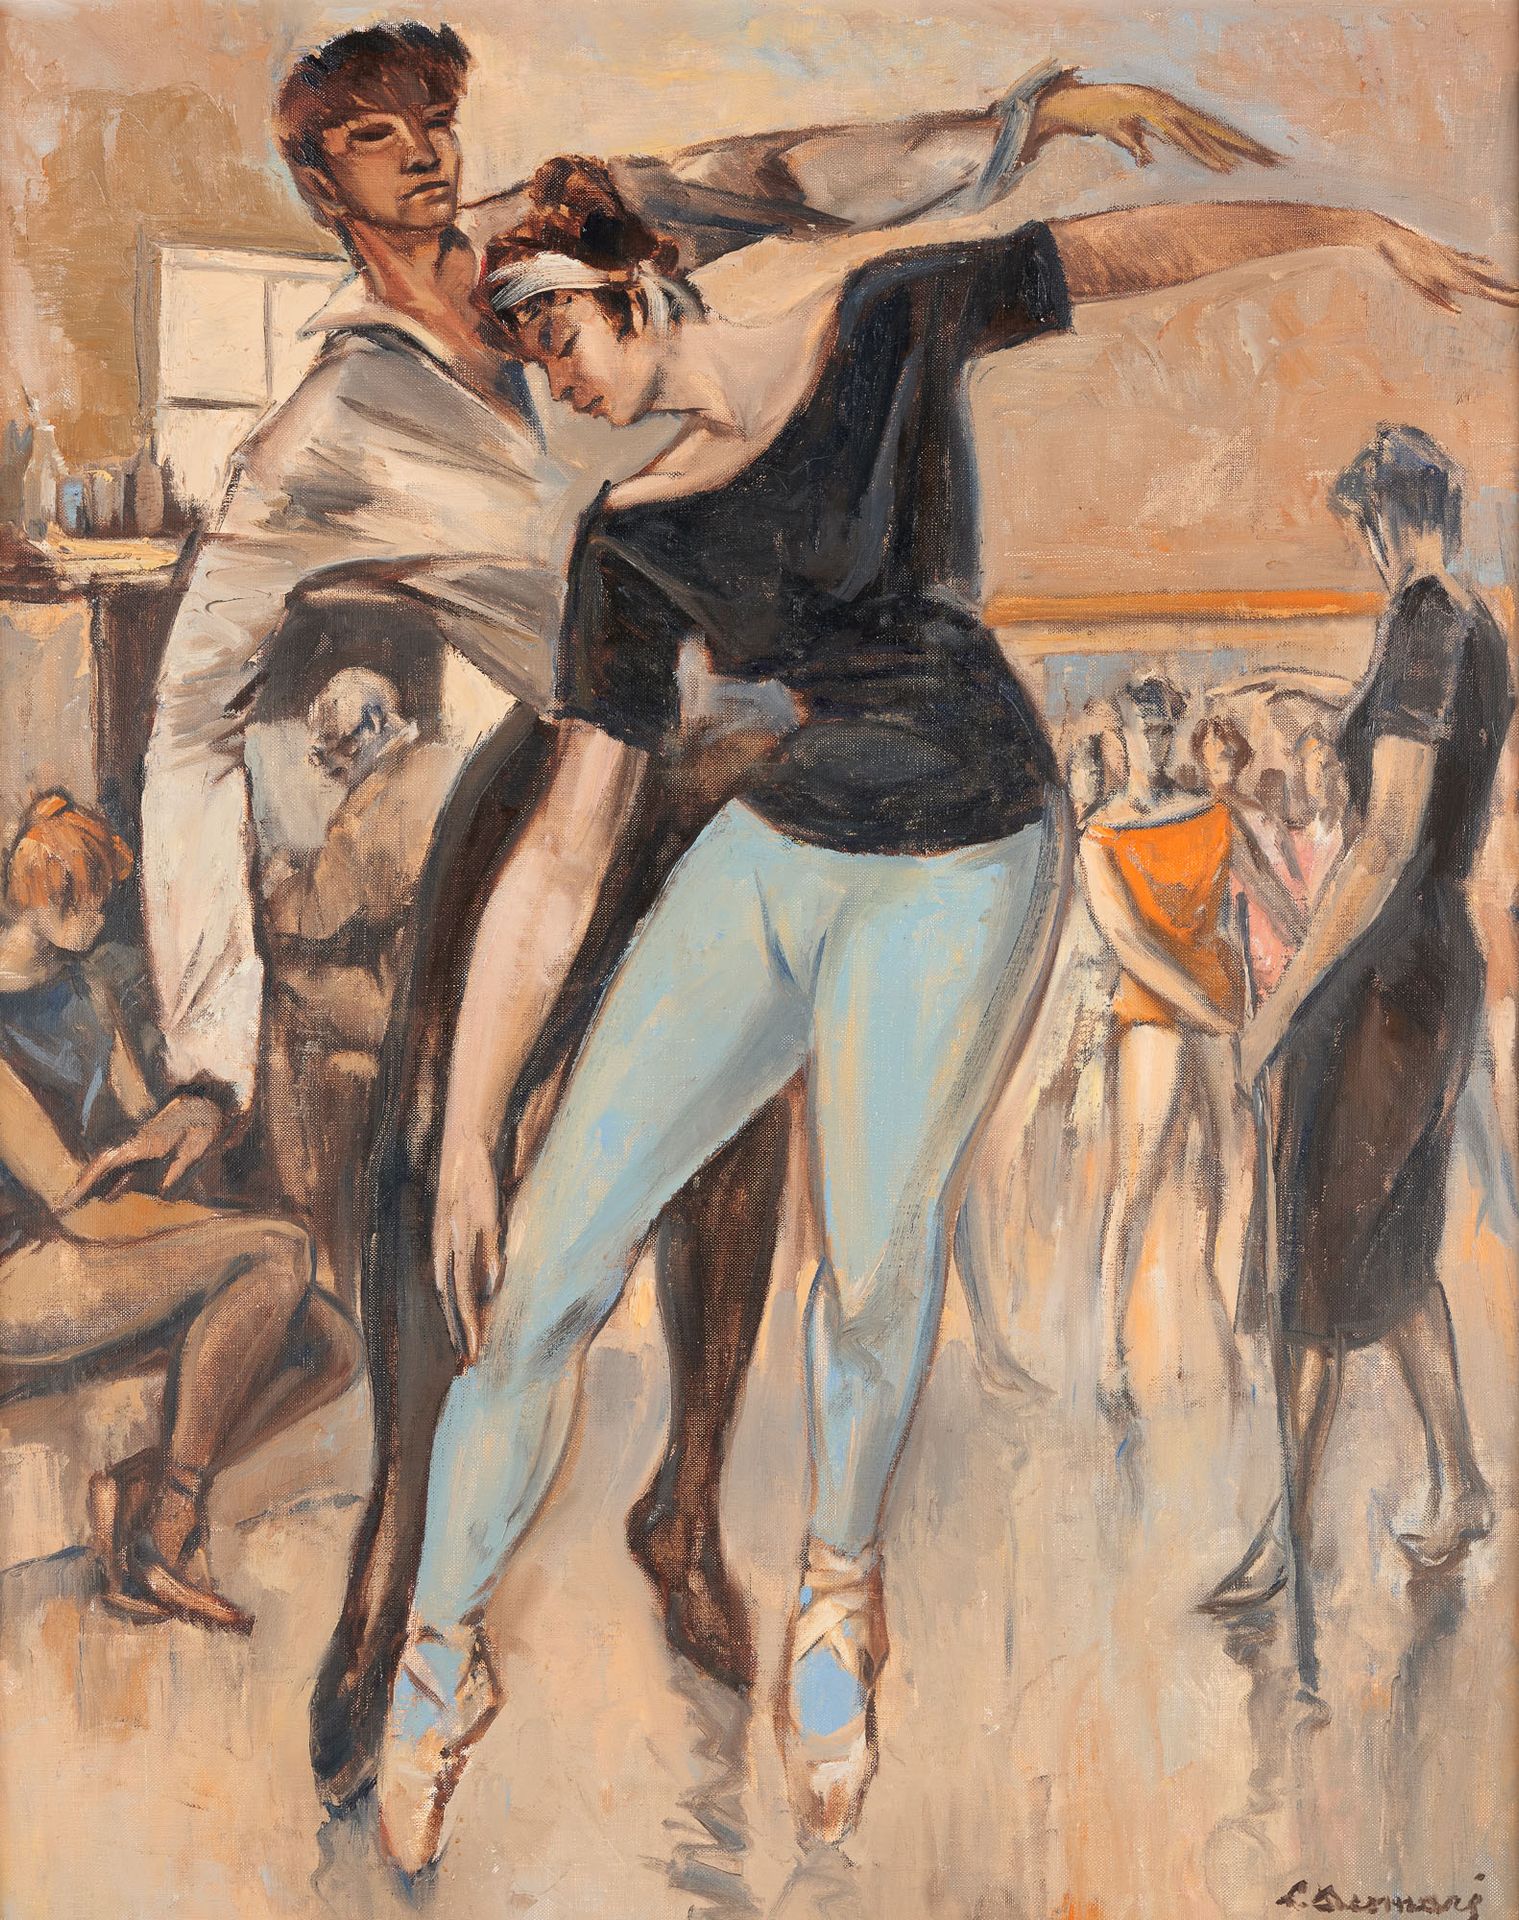 Lucien DESMARÉ École belge (1905-1961) 布面油画：舞蹈课。

签名：L. Desmaré。

尺寸：100 x 80厘米。